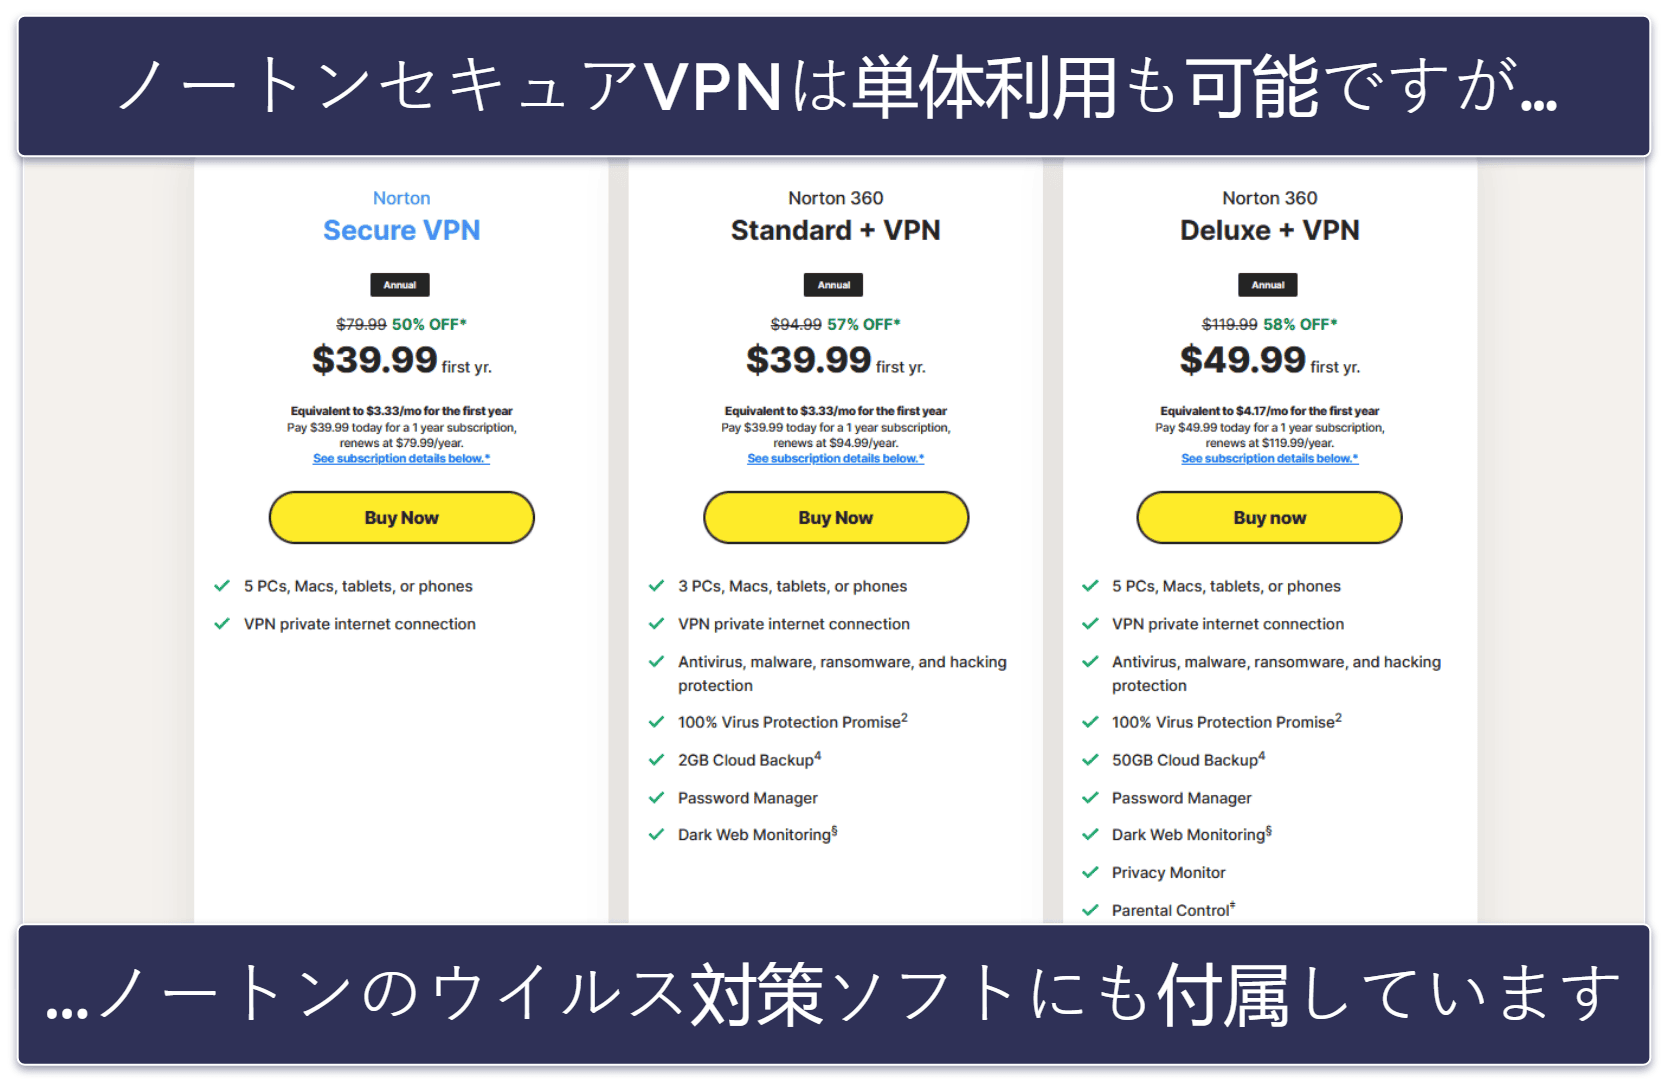 ノートンセキュア VPN のプランと価格帯